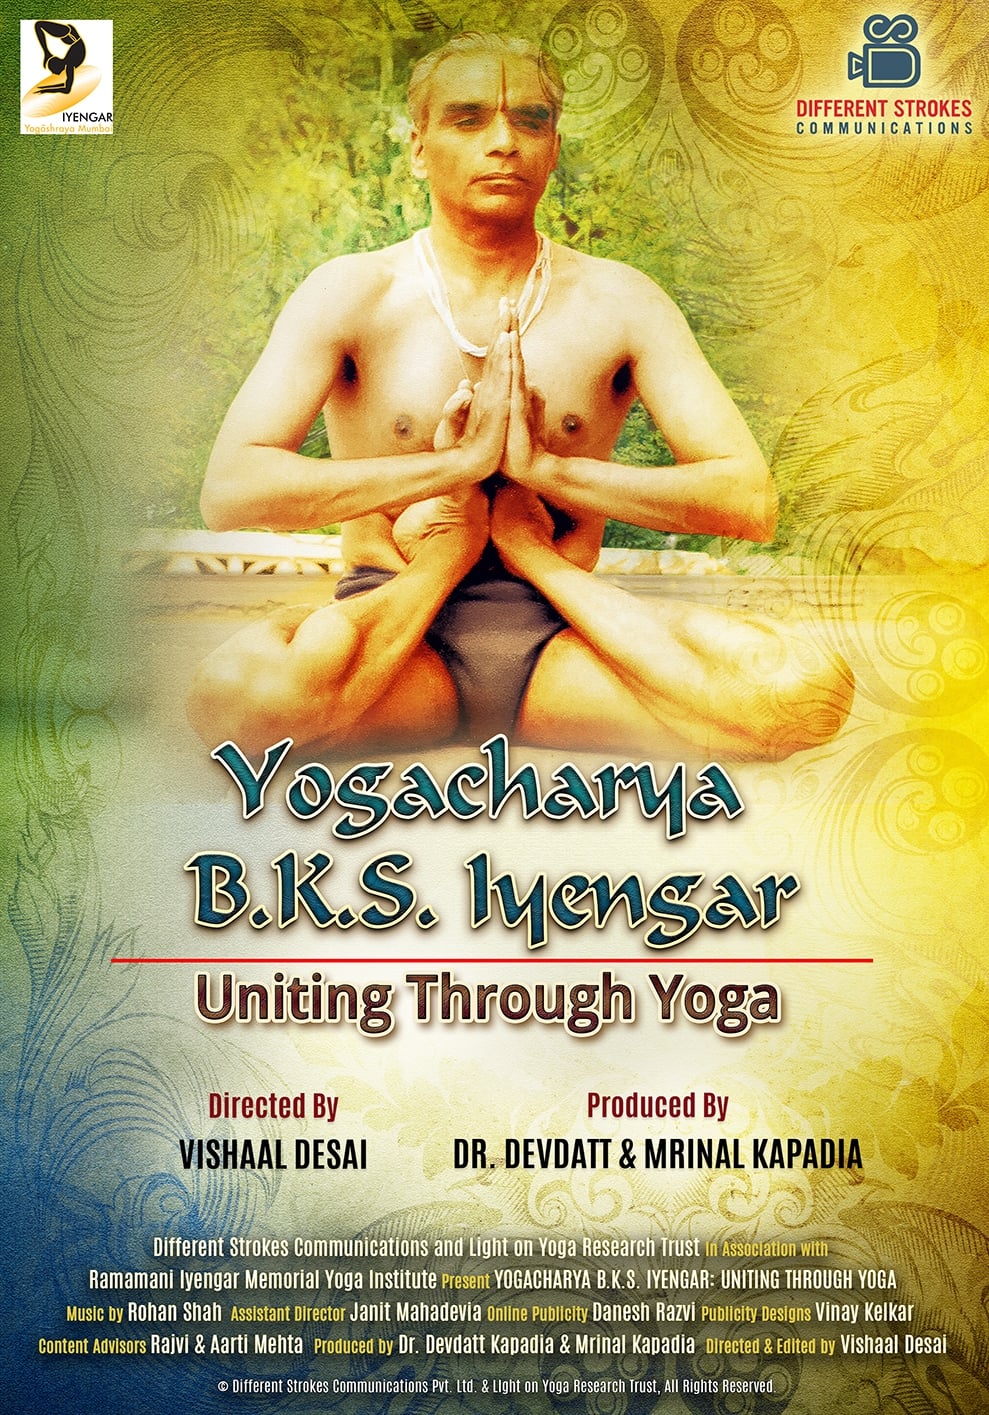 B.K.S. Iyengar: Uniting Through Yoga